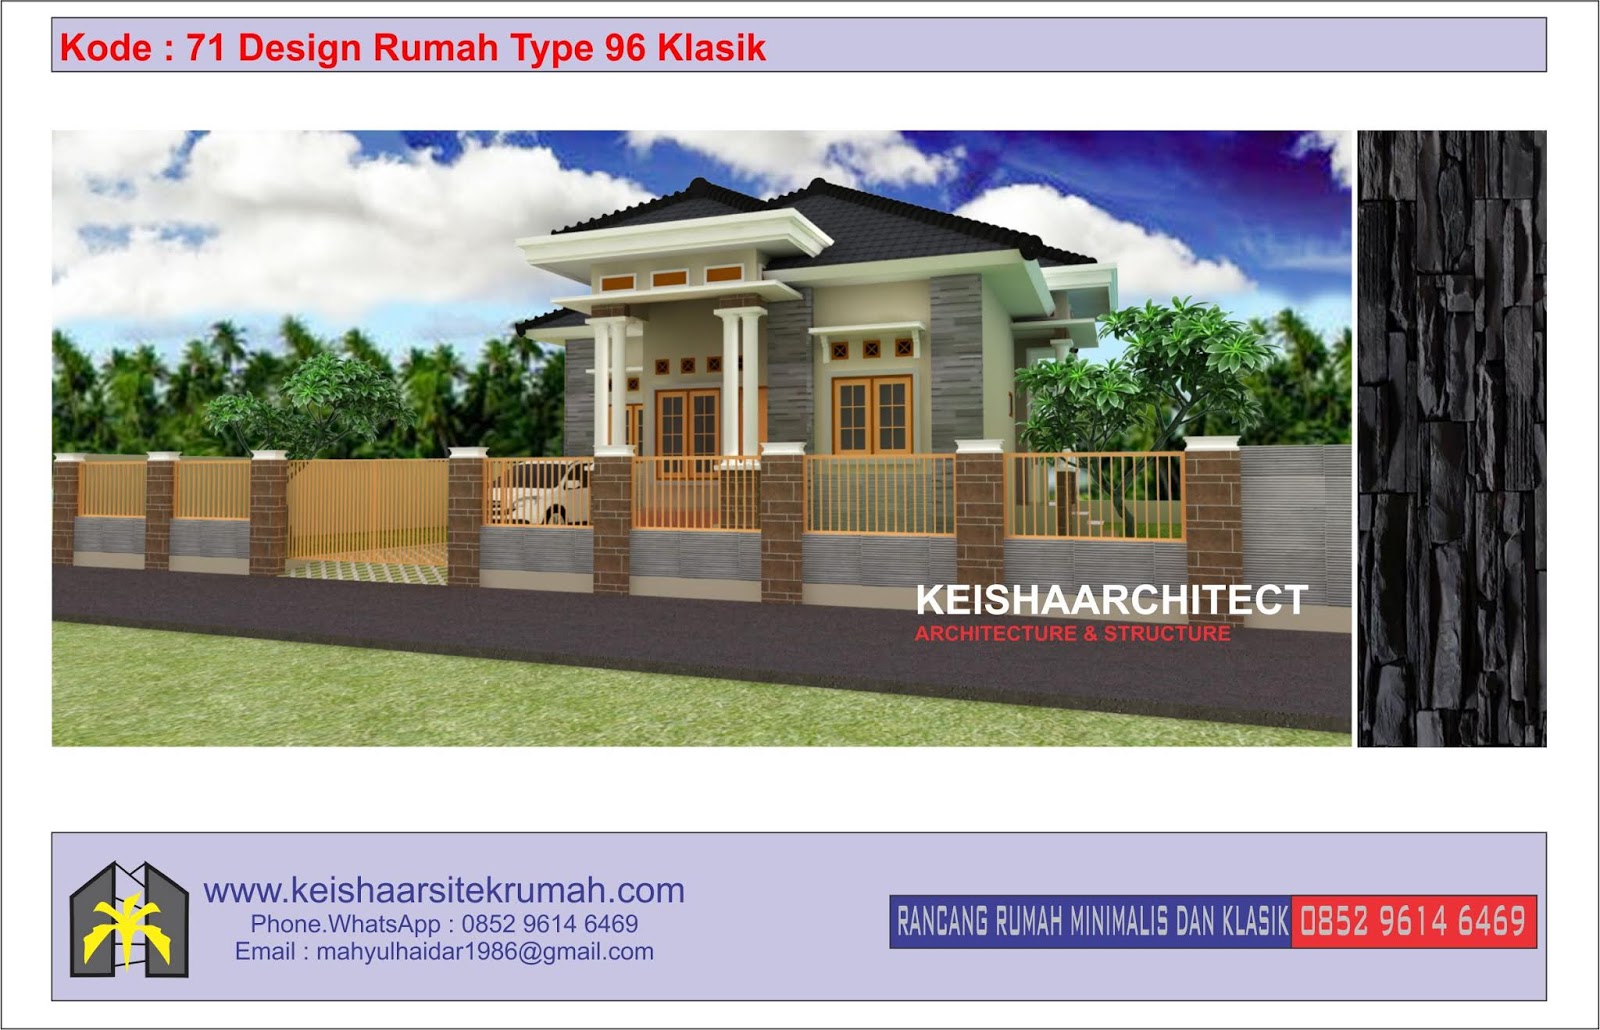 Kode 71 Design Rumah Klasik Type 96 Klasik Lokasi Rendani Atas